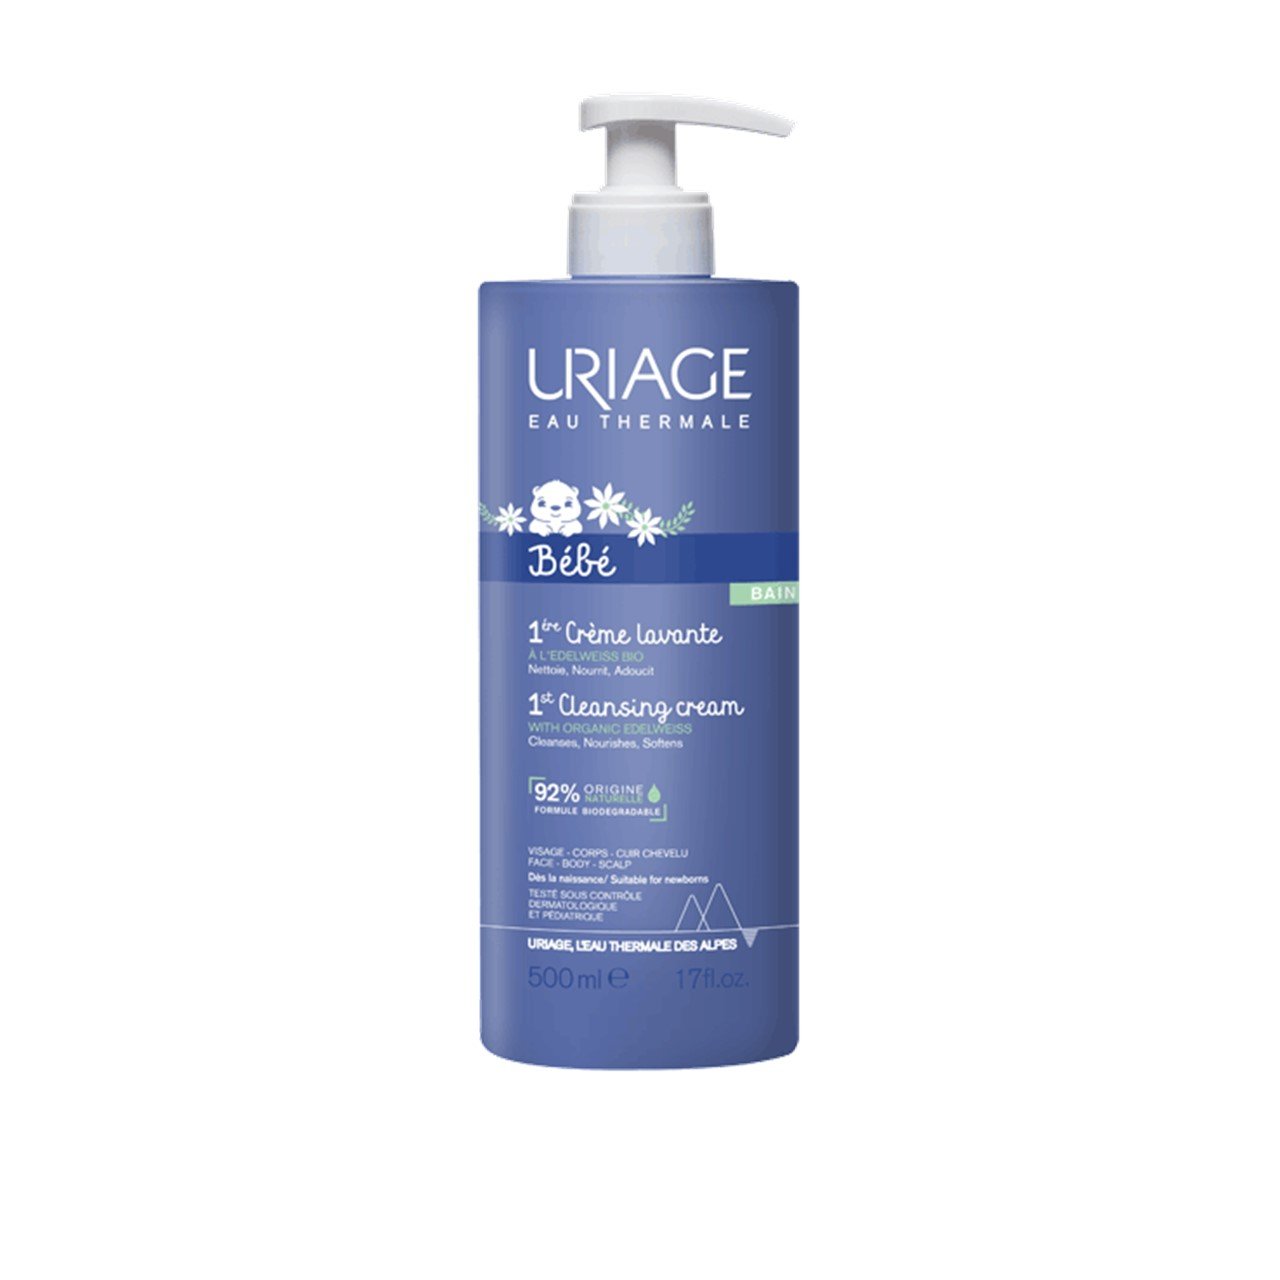 Uriage Baby 1st Cleansing Cream 500ml (16.91fl oz)